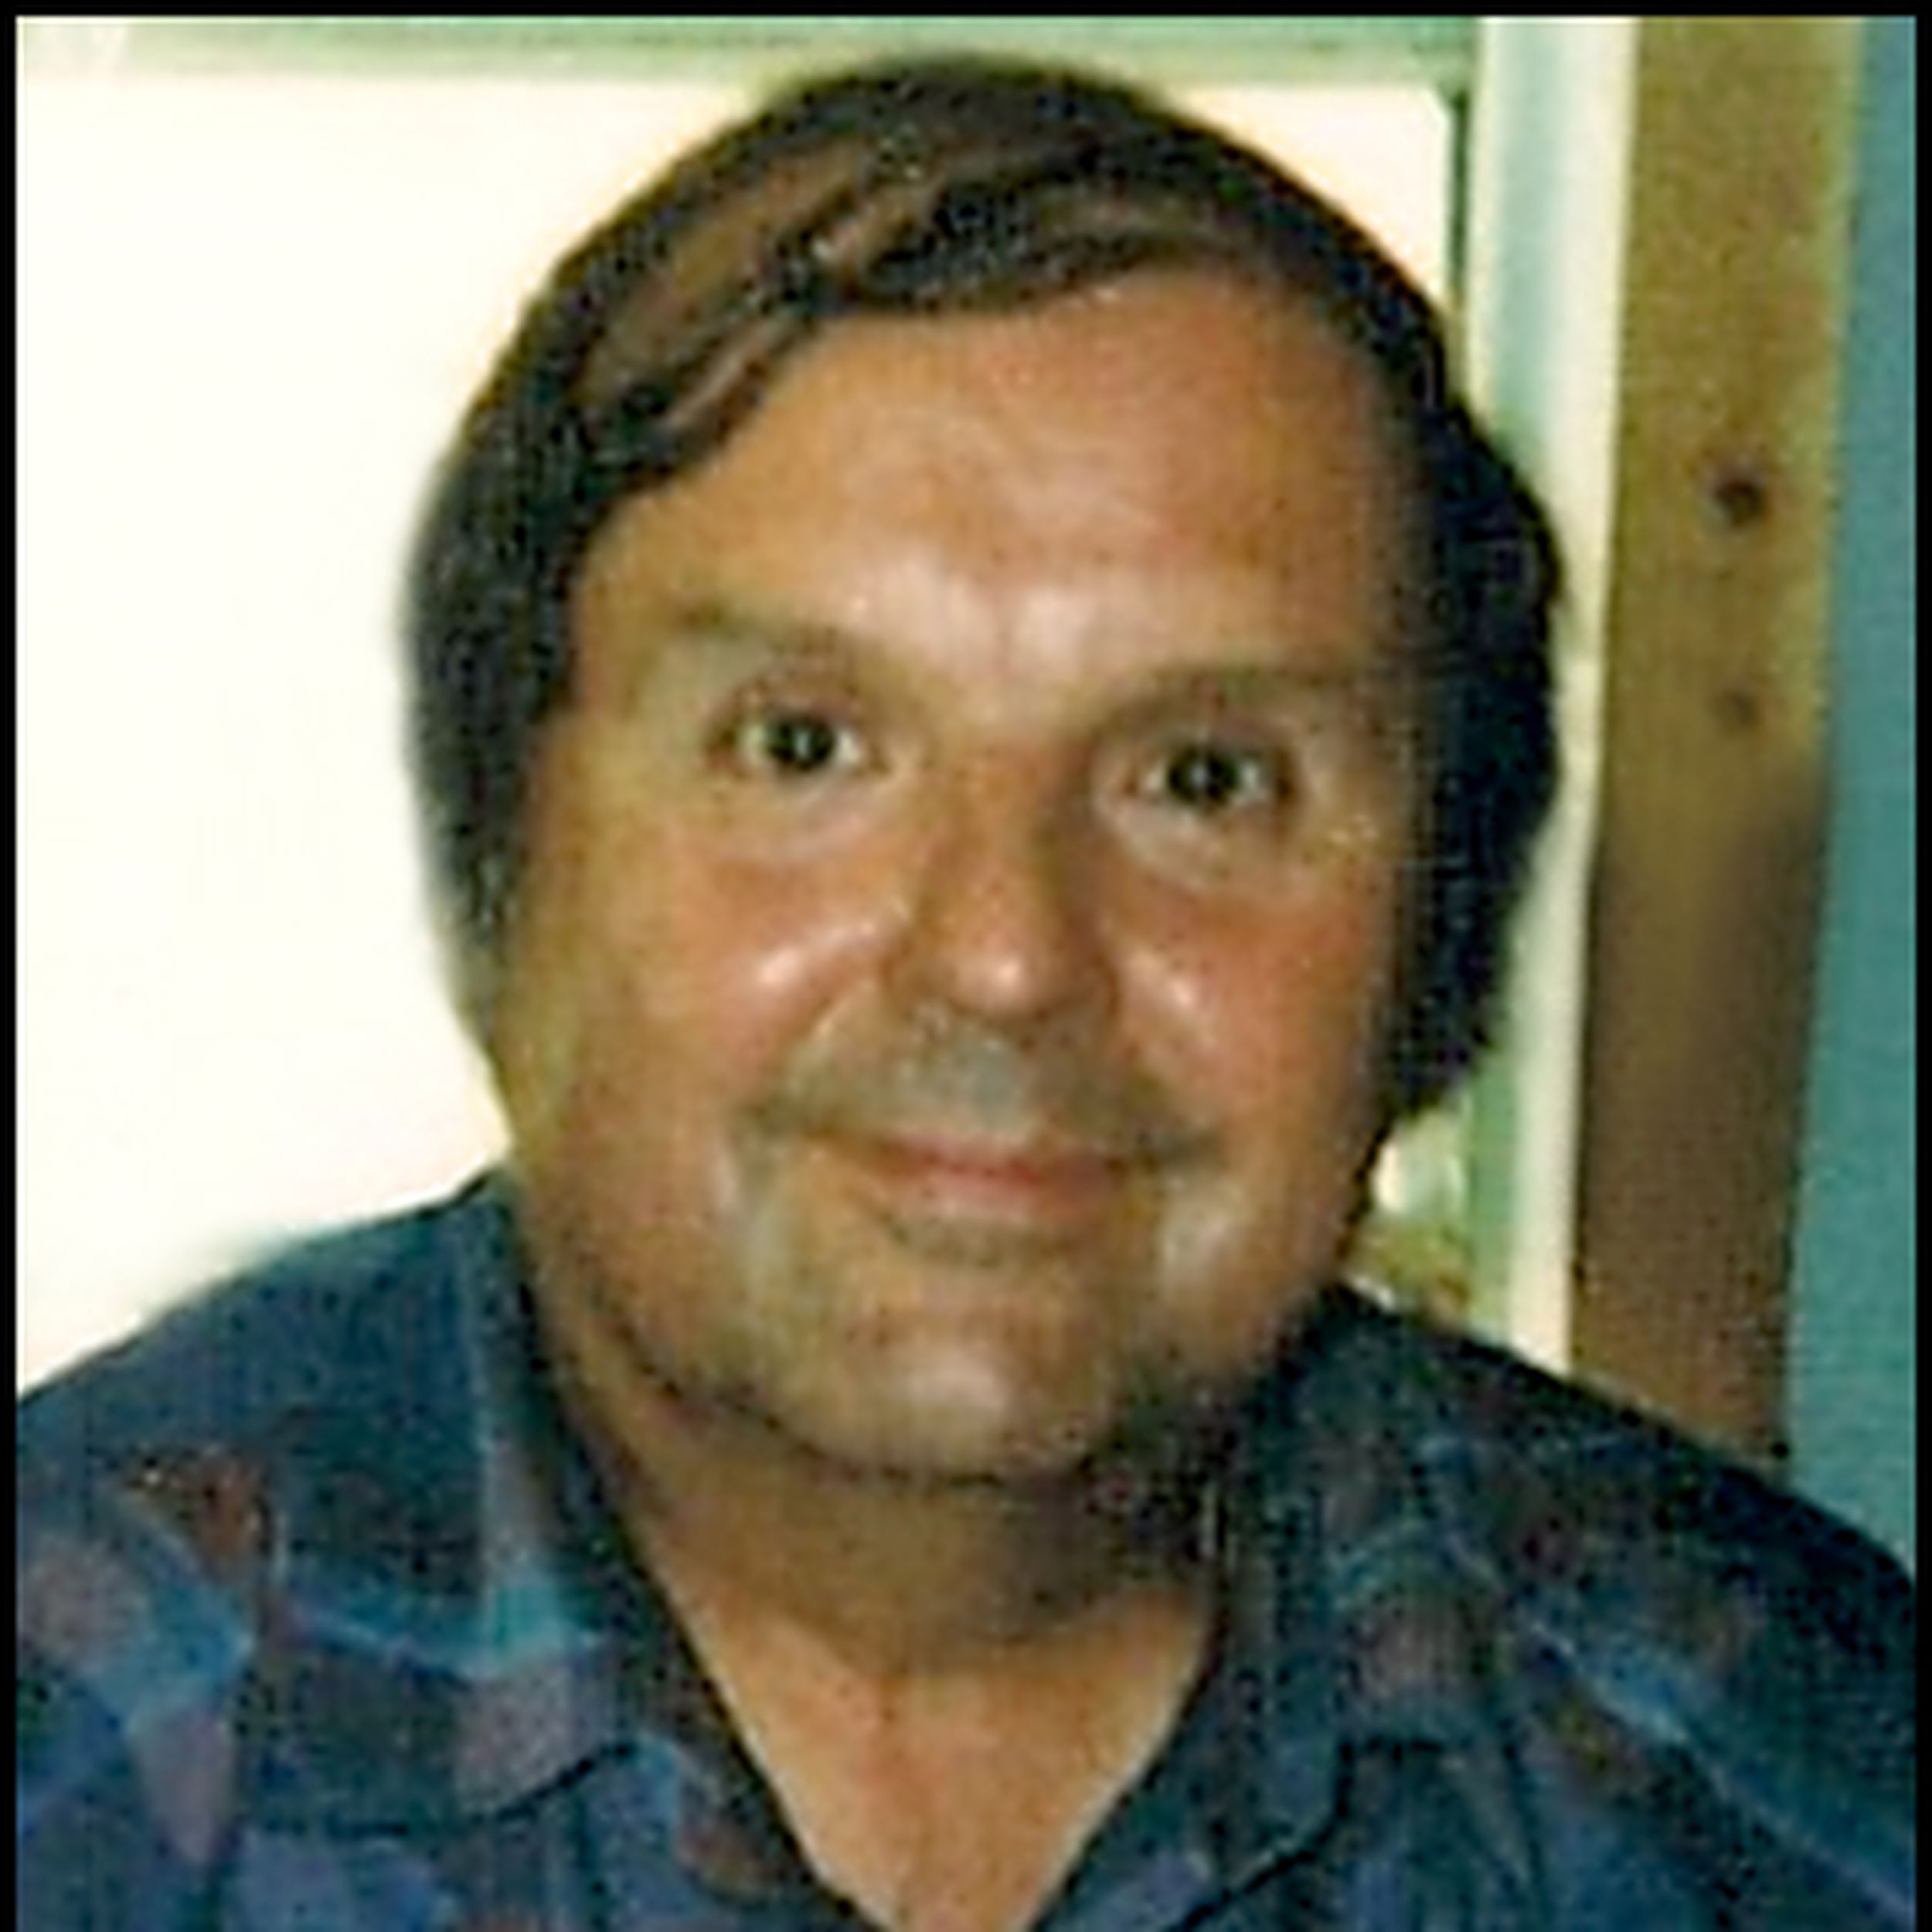 Obituary: Webster, Ronald Franklin